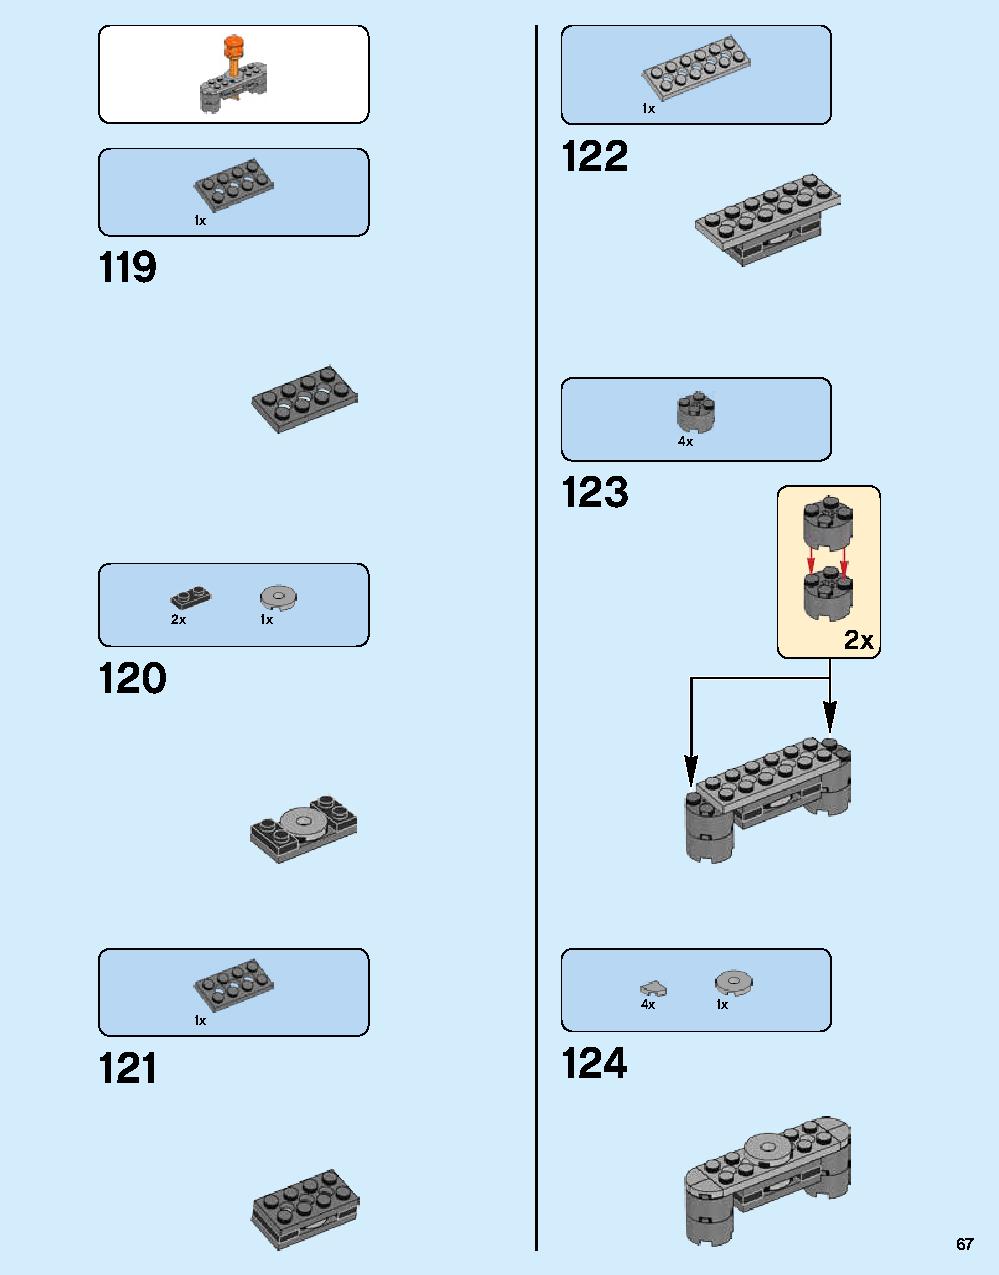 ニンジャゴー シティ 70620 レゴの商品情報 レゴの説明書・組立方法 67 page